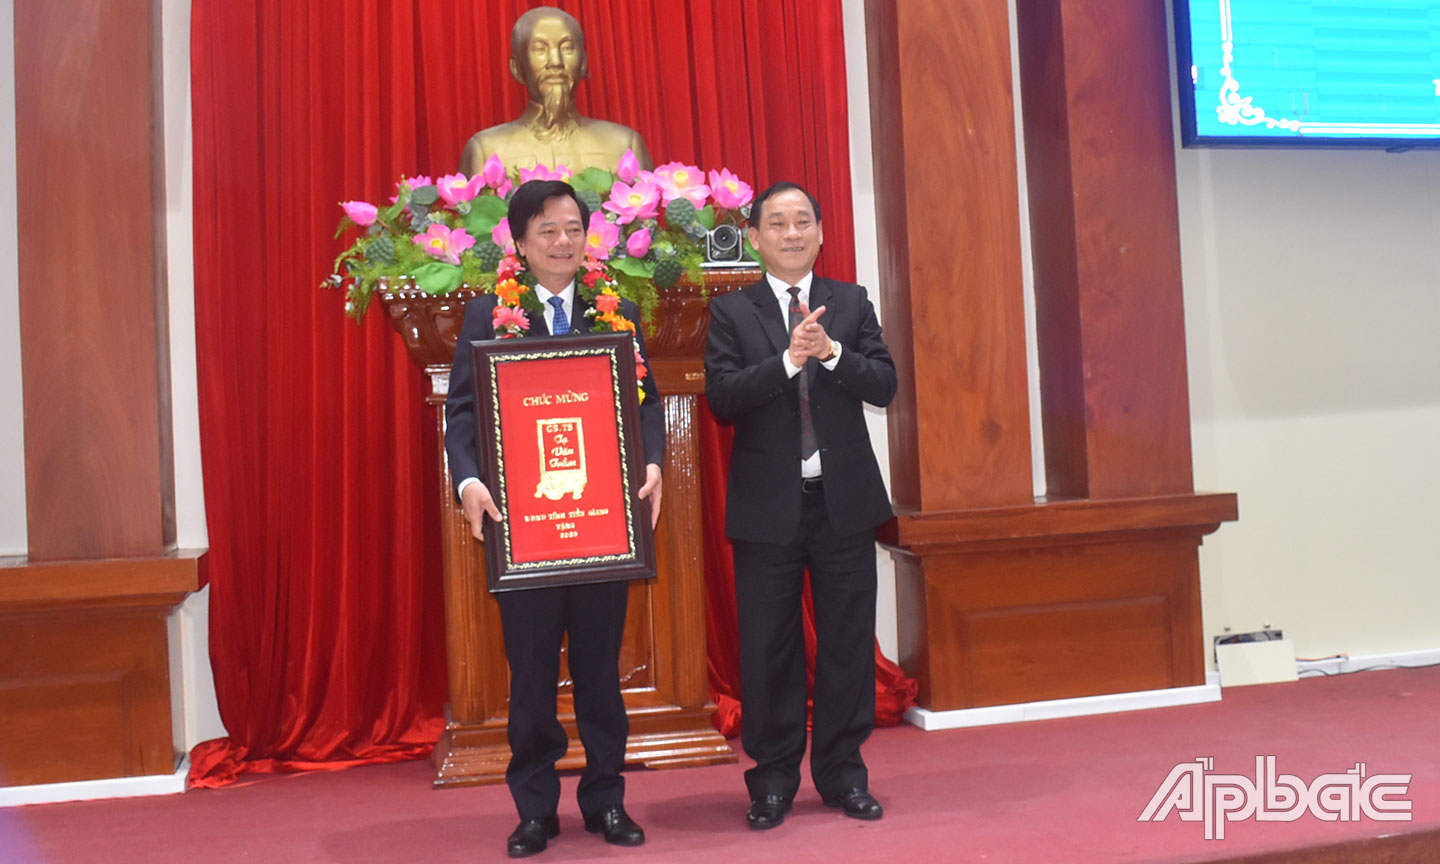  Chủ tịch UBND tỉnh Nguyễn Văn Vĩnh trao tặng khánh vàng vinh danh GS.TS.BS. Tạ Văn Trầm (ngày 18-5-2022).